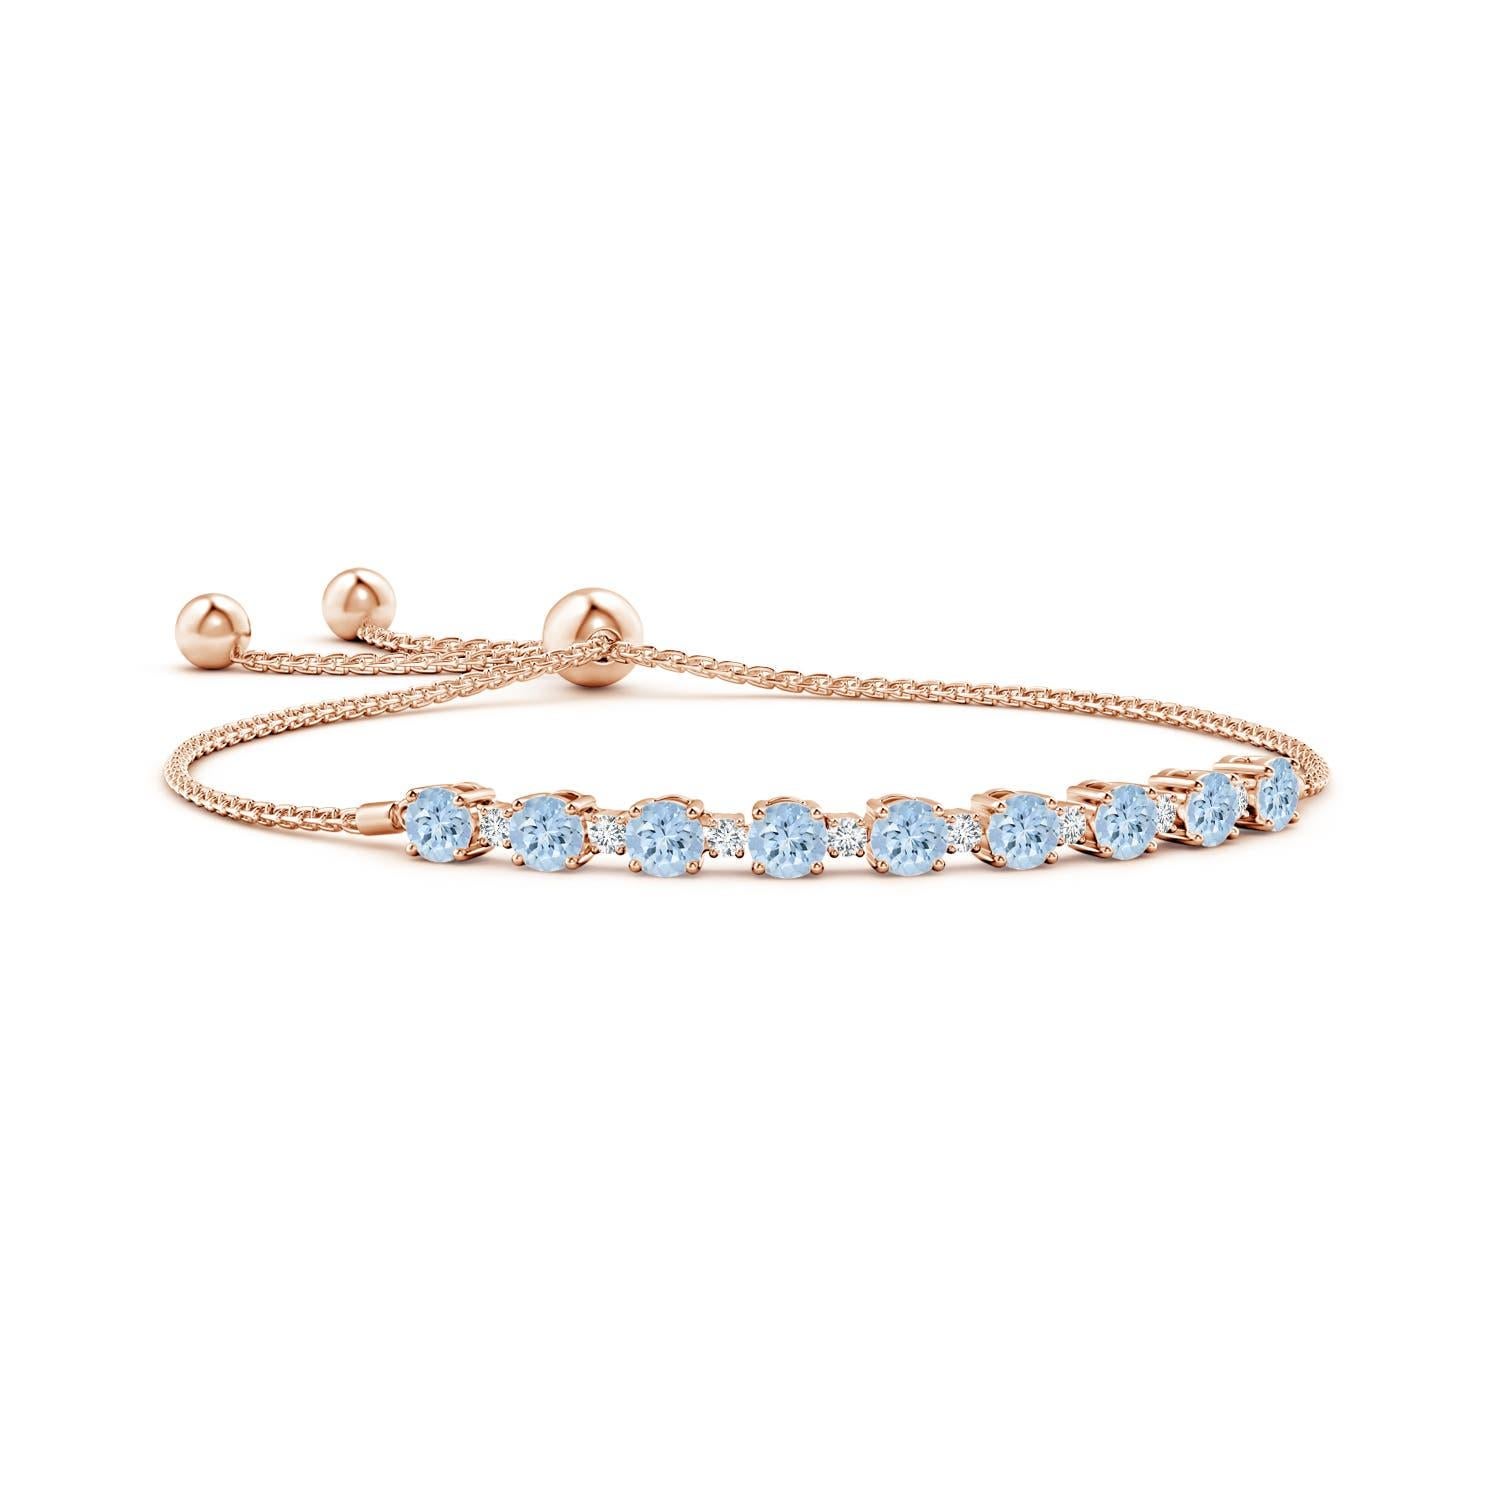 Meeresblaue Aquamarine und glitzernde Diamanten vereinen sich auf diesem Tennis-Bolo-Armband aus 14 Karat Roségold. Sie sind abwechselnd mit Zacken besetzt und sorgen für einen klassischen Look. Dieses Armband ist verstellbar und passt den meisten